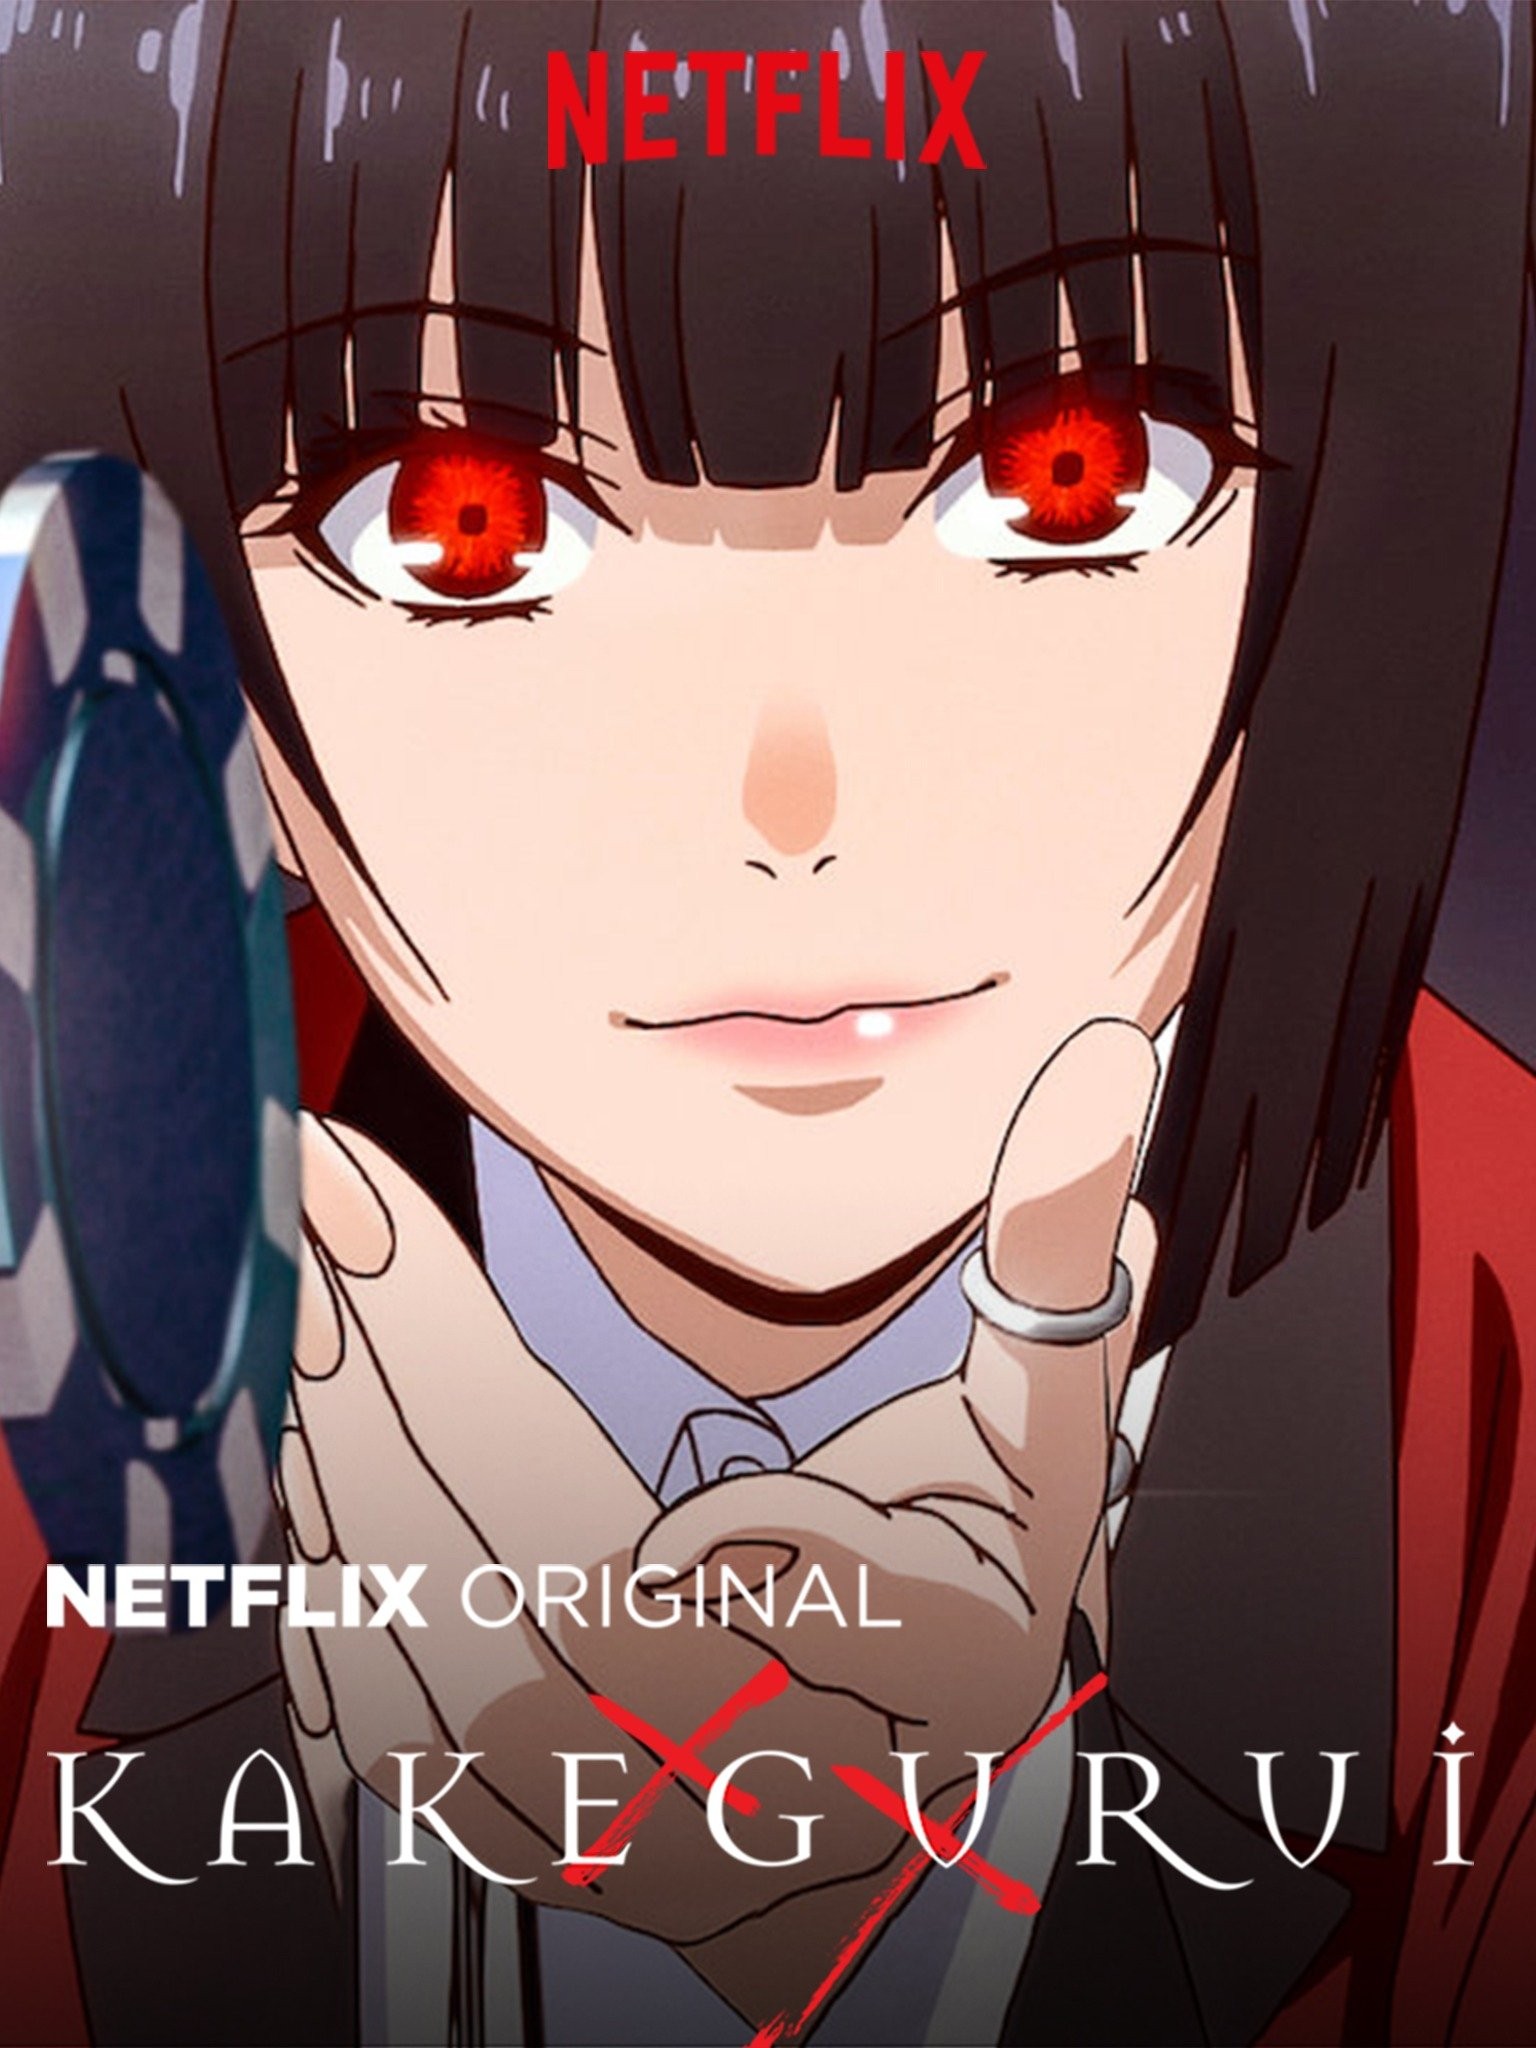 Netflix Reveals First Trailer, Official Release Date For Kakegurui